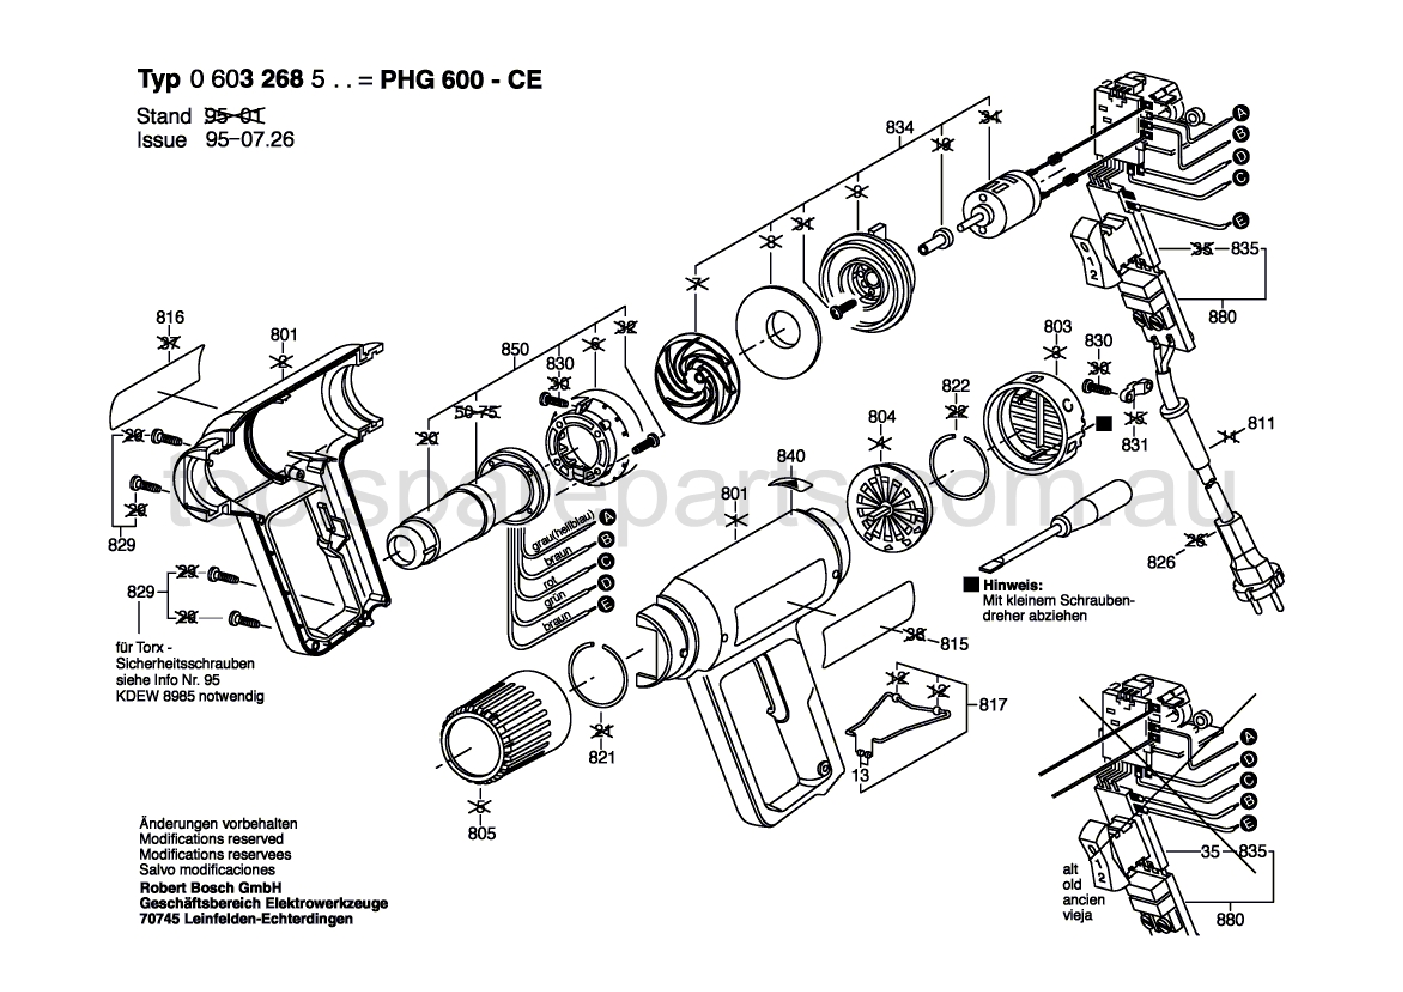 Bosch PHG 600 CE 0603268537  Diagram 1